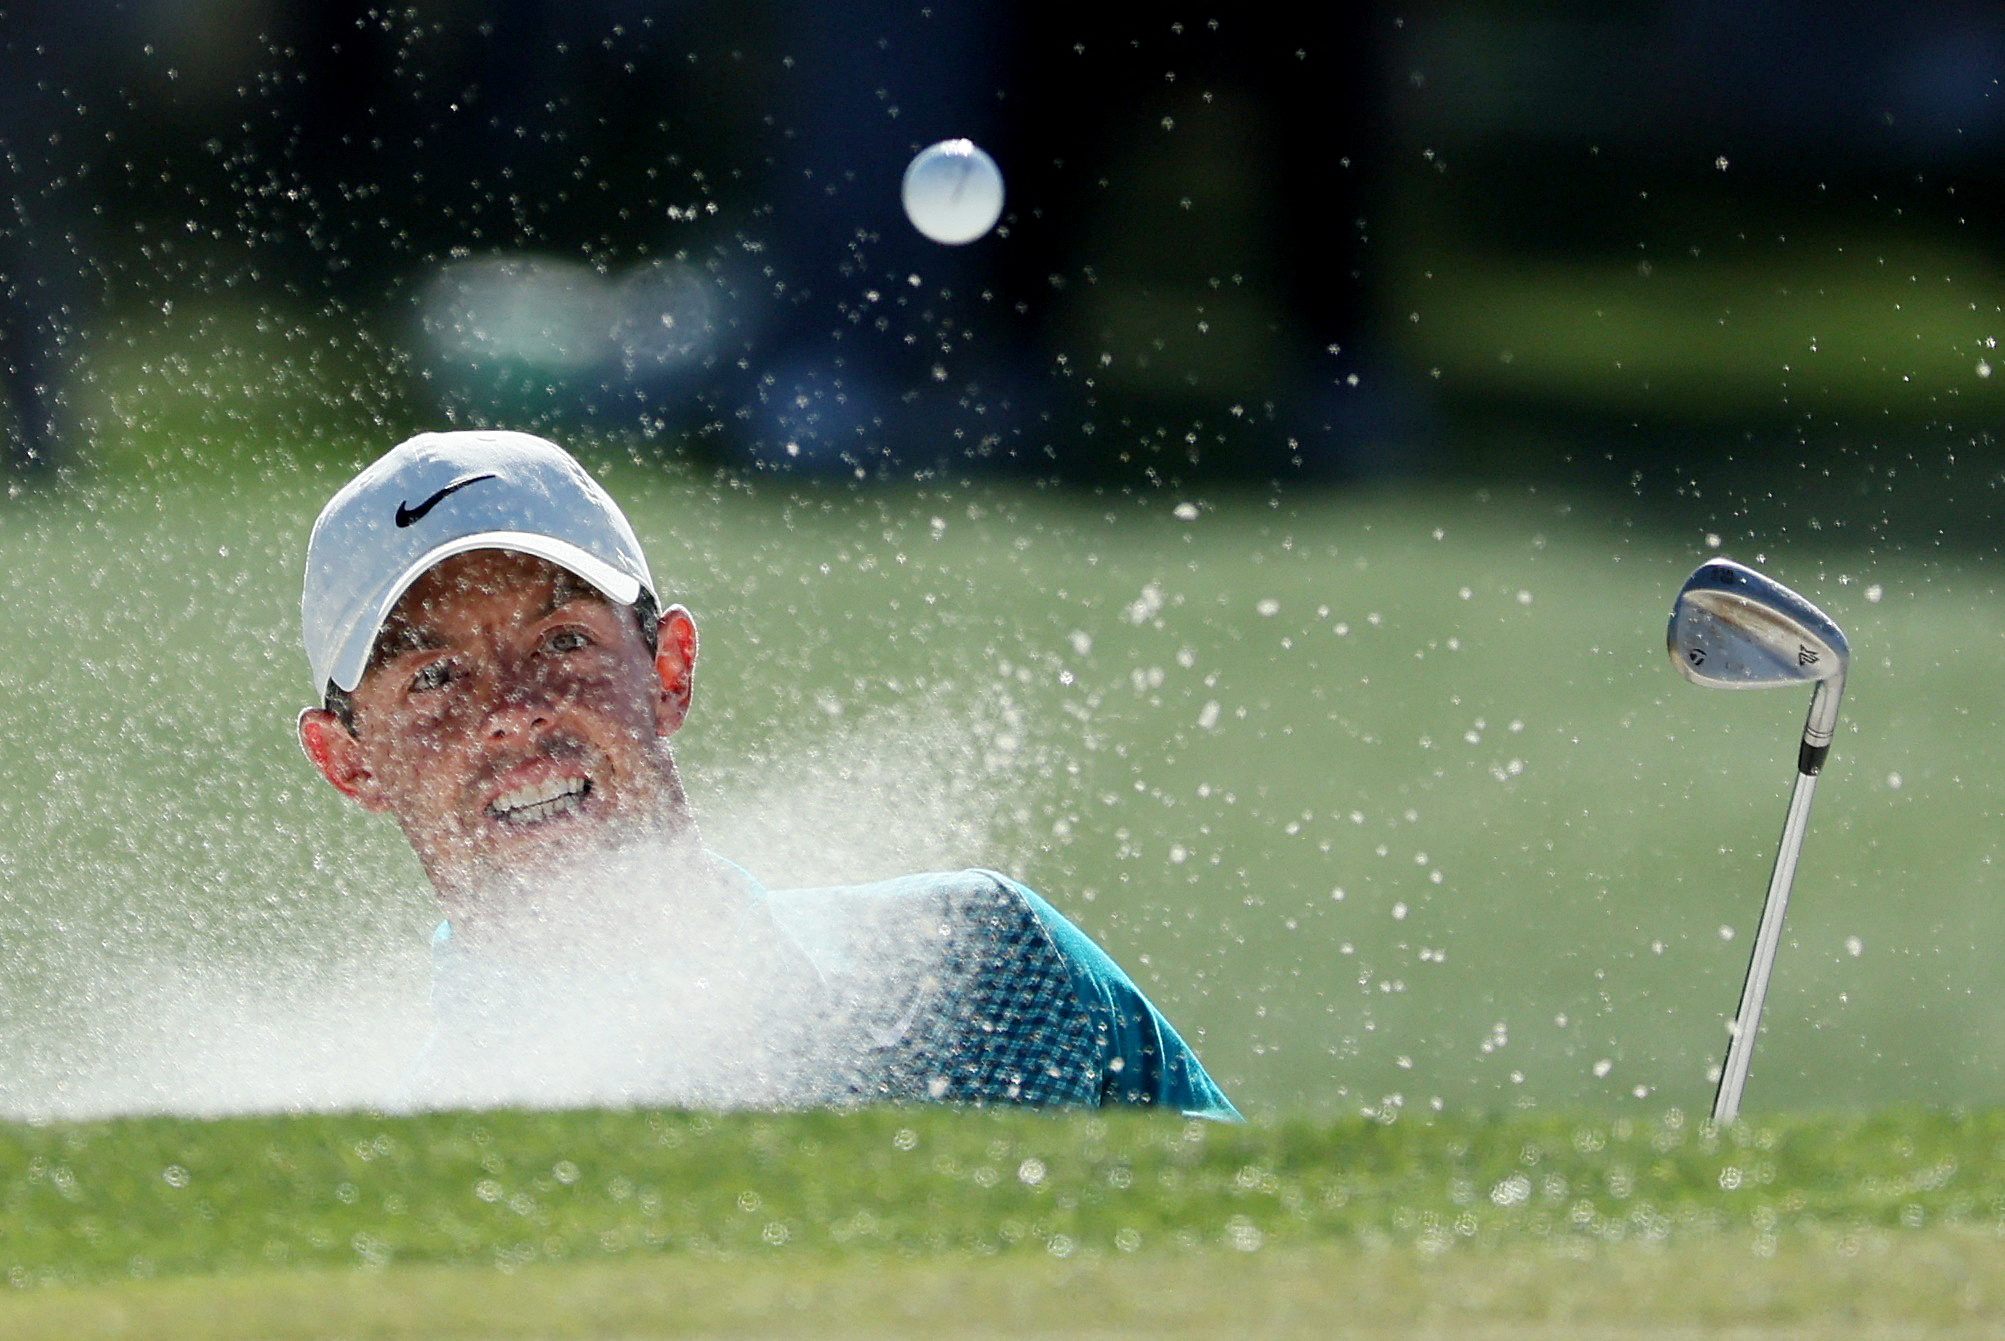  Rory McIlroy tiene la posibilidad de sumarse al exclusivo club que conforman los que han ganado alguna vez en sus carreras los 4 campeonatos mayores, solo le resta el PGA Championship 